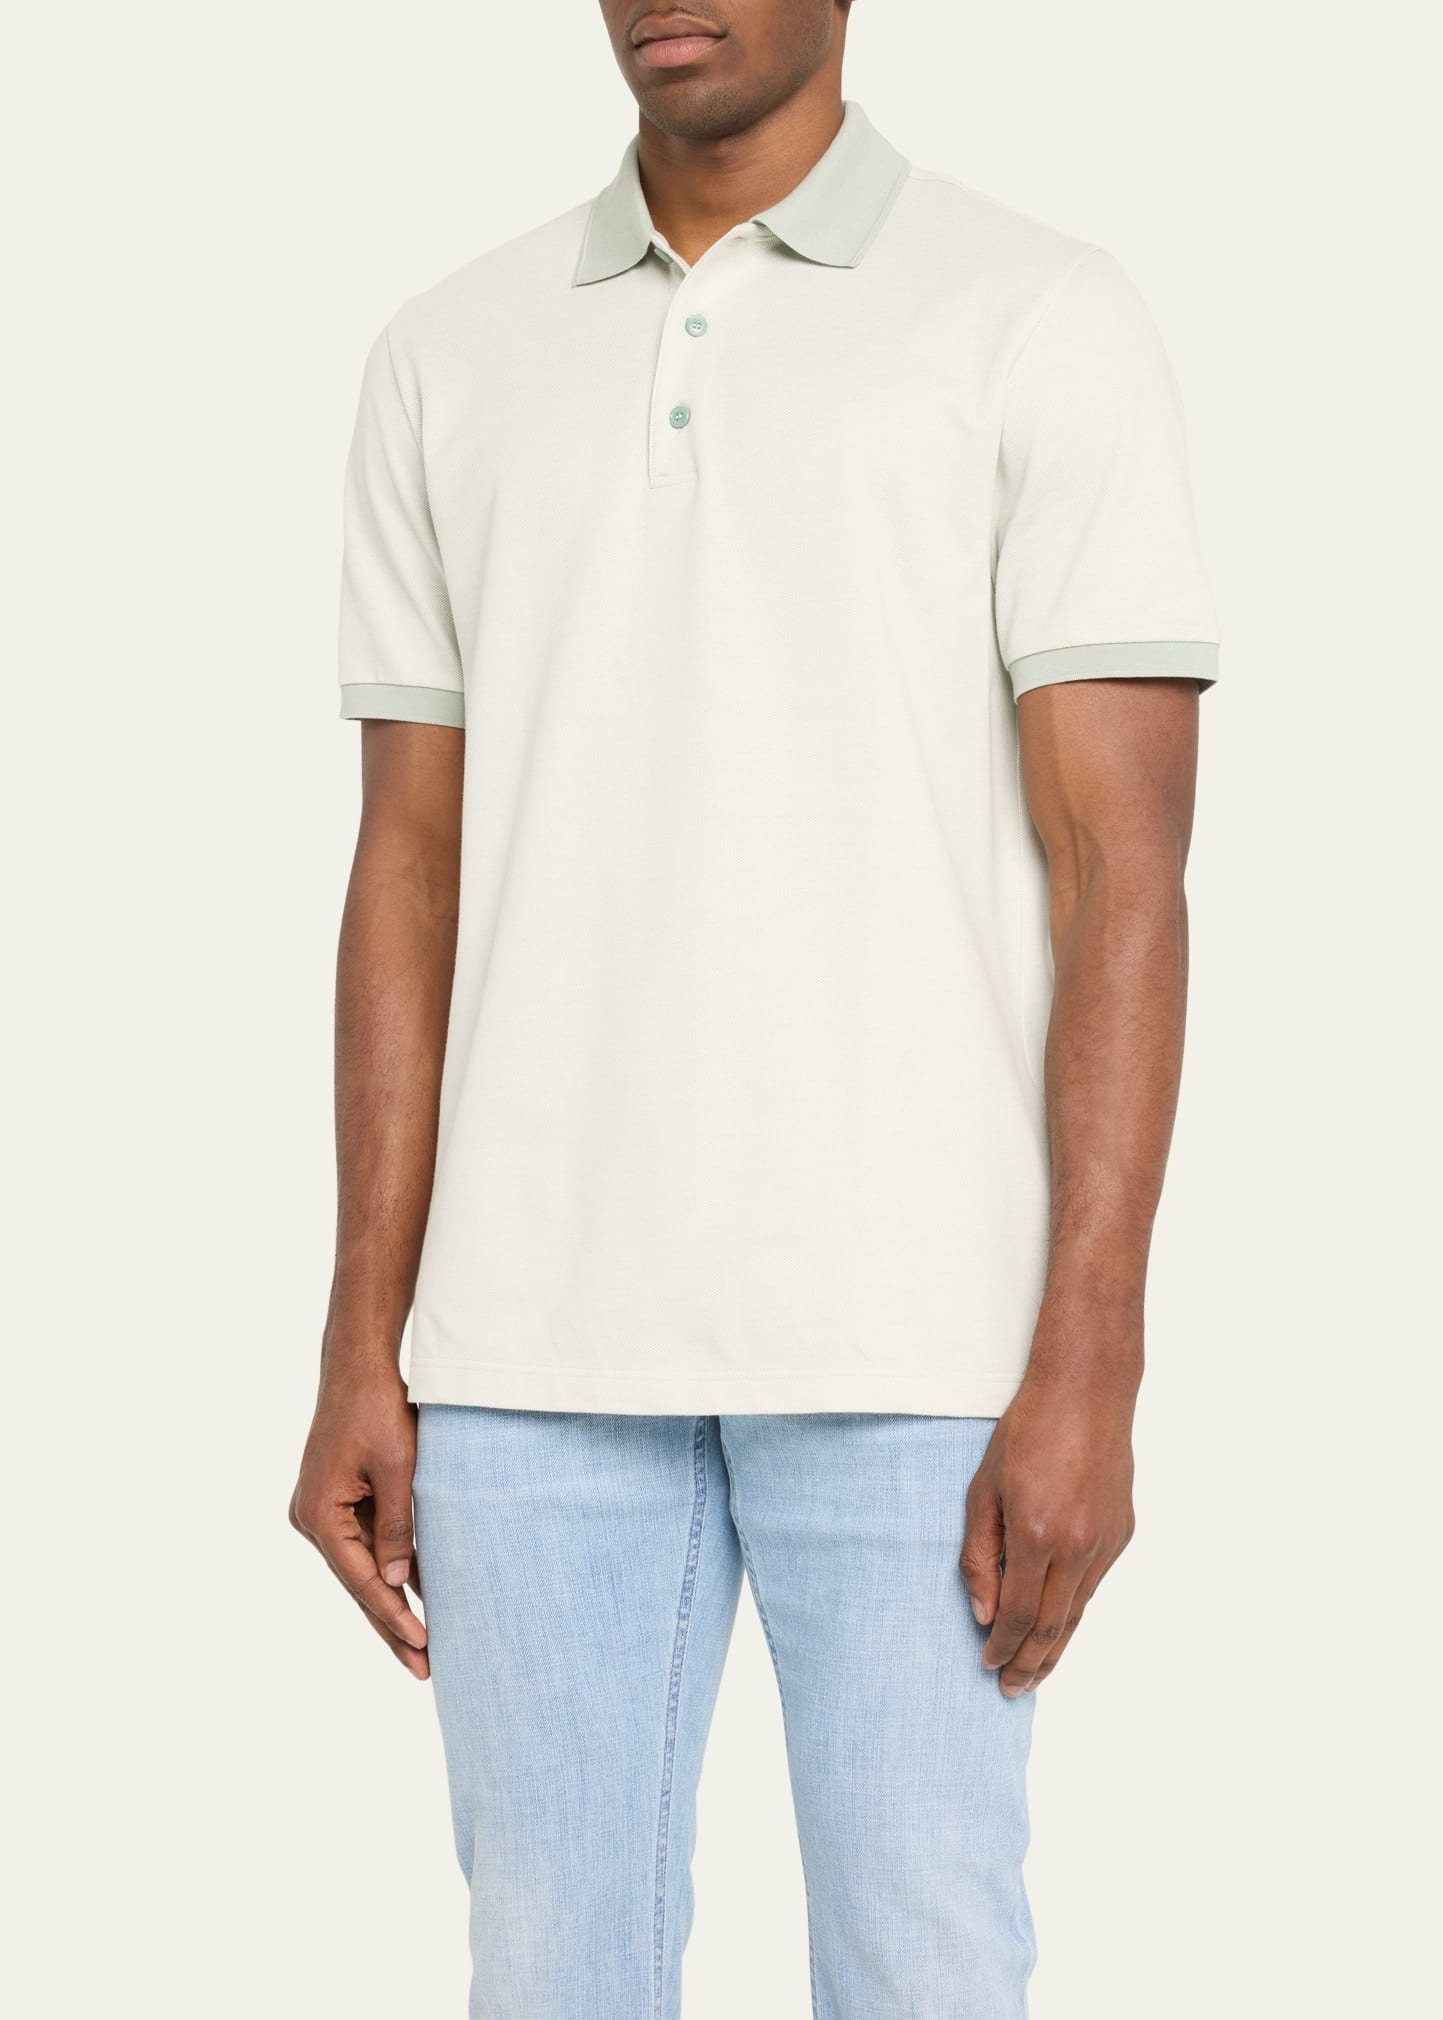 Men's Cotton Polo Shirt - 4